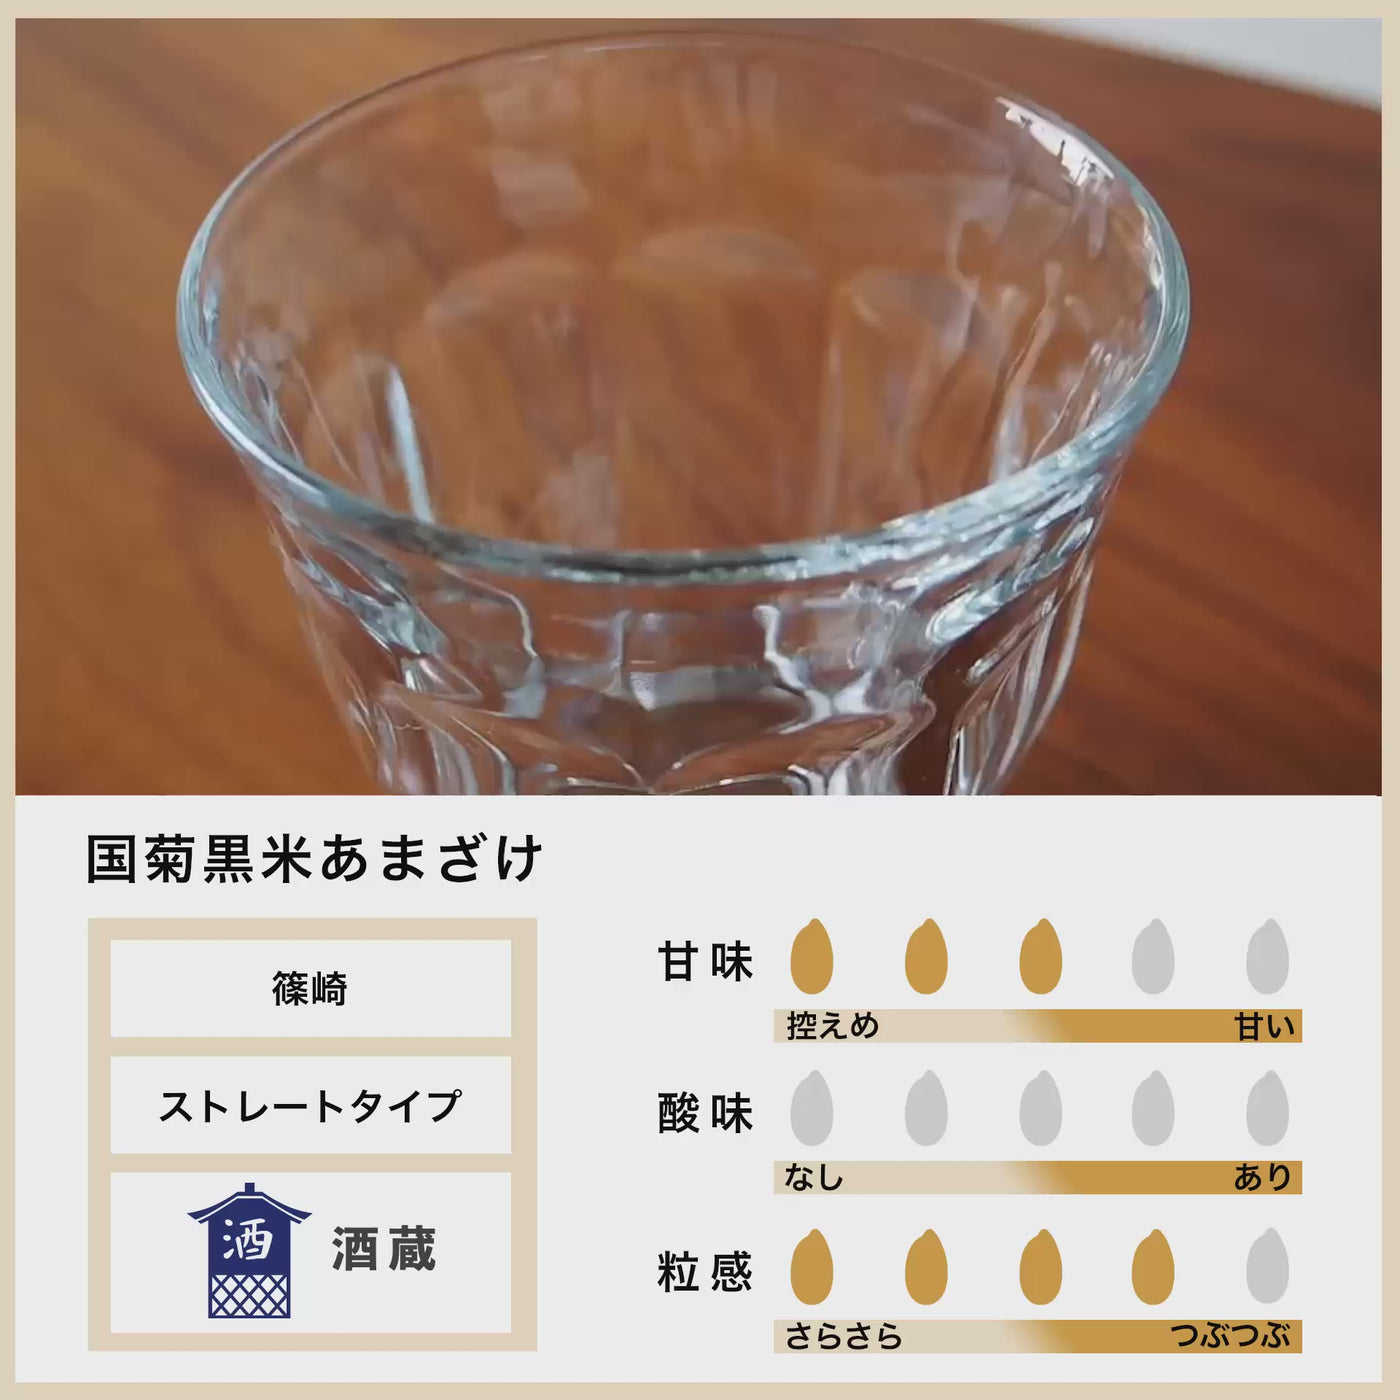 [Bulk purchase] Shinozaki Kuni Chrysanthemum Black Rice Amazake 985g Set of 6/Amazake